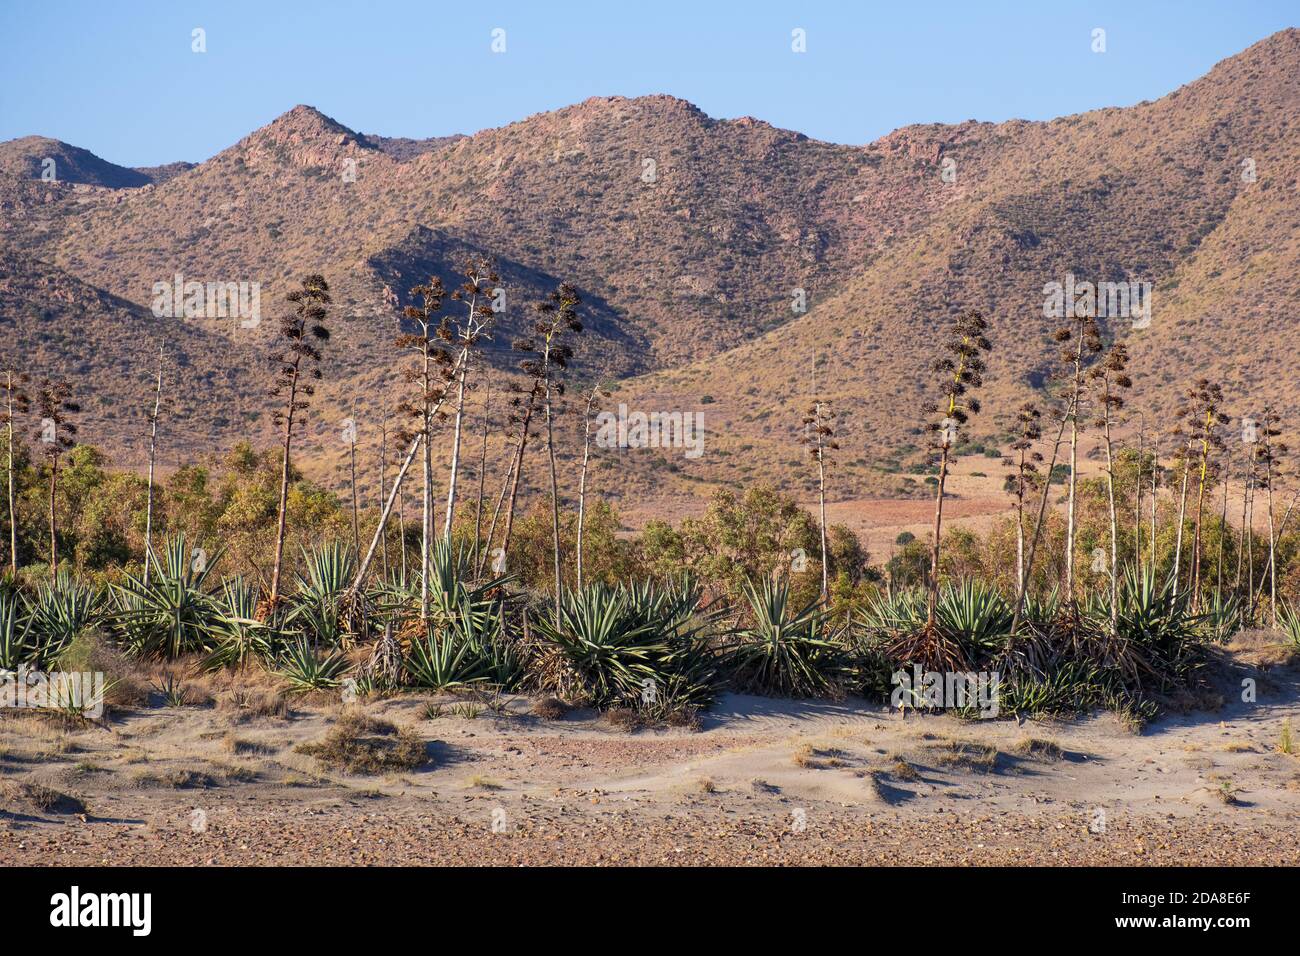 Agave piante e fiori nel deserto, questa pianta cresce in climi secchi. Paesaggio mediterraneo a Cabo de gata, Almería, Andalusia, Spagna Foto Stock